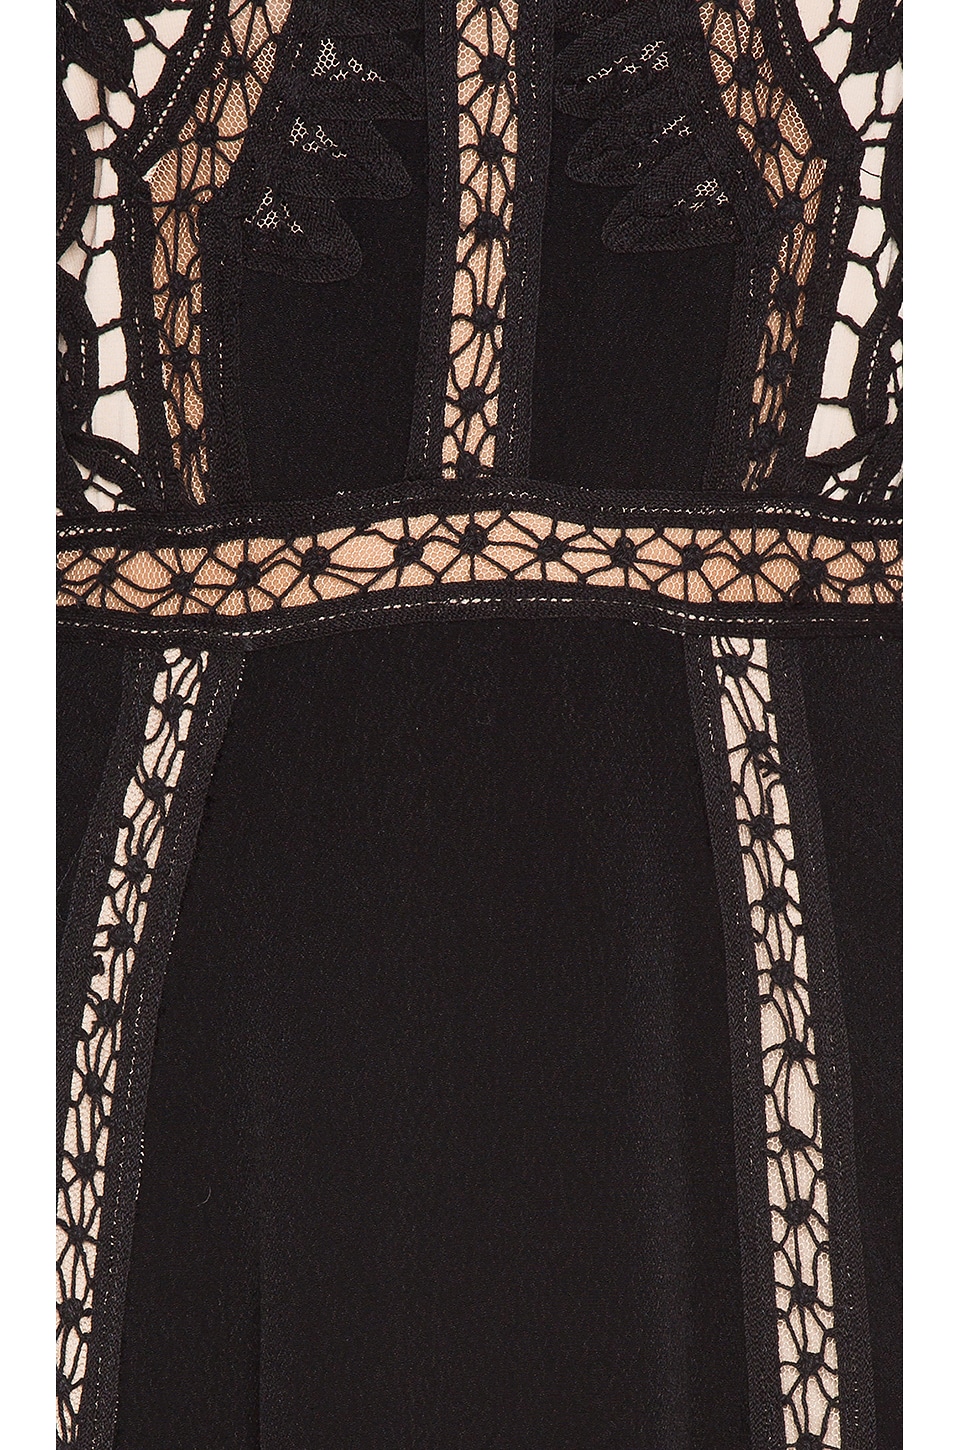 For Love & Lemons Penelope Mini Dress in Black | REVOLVE